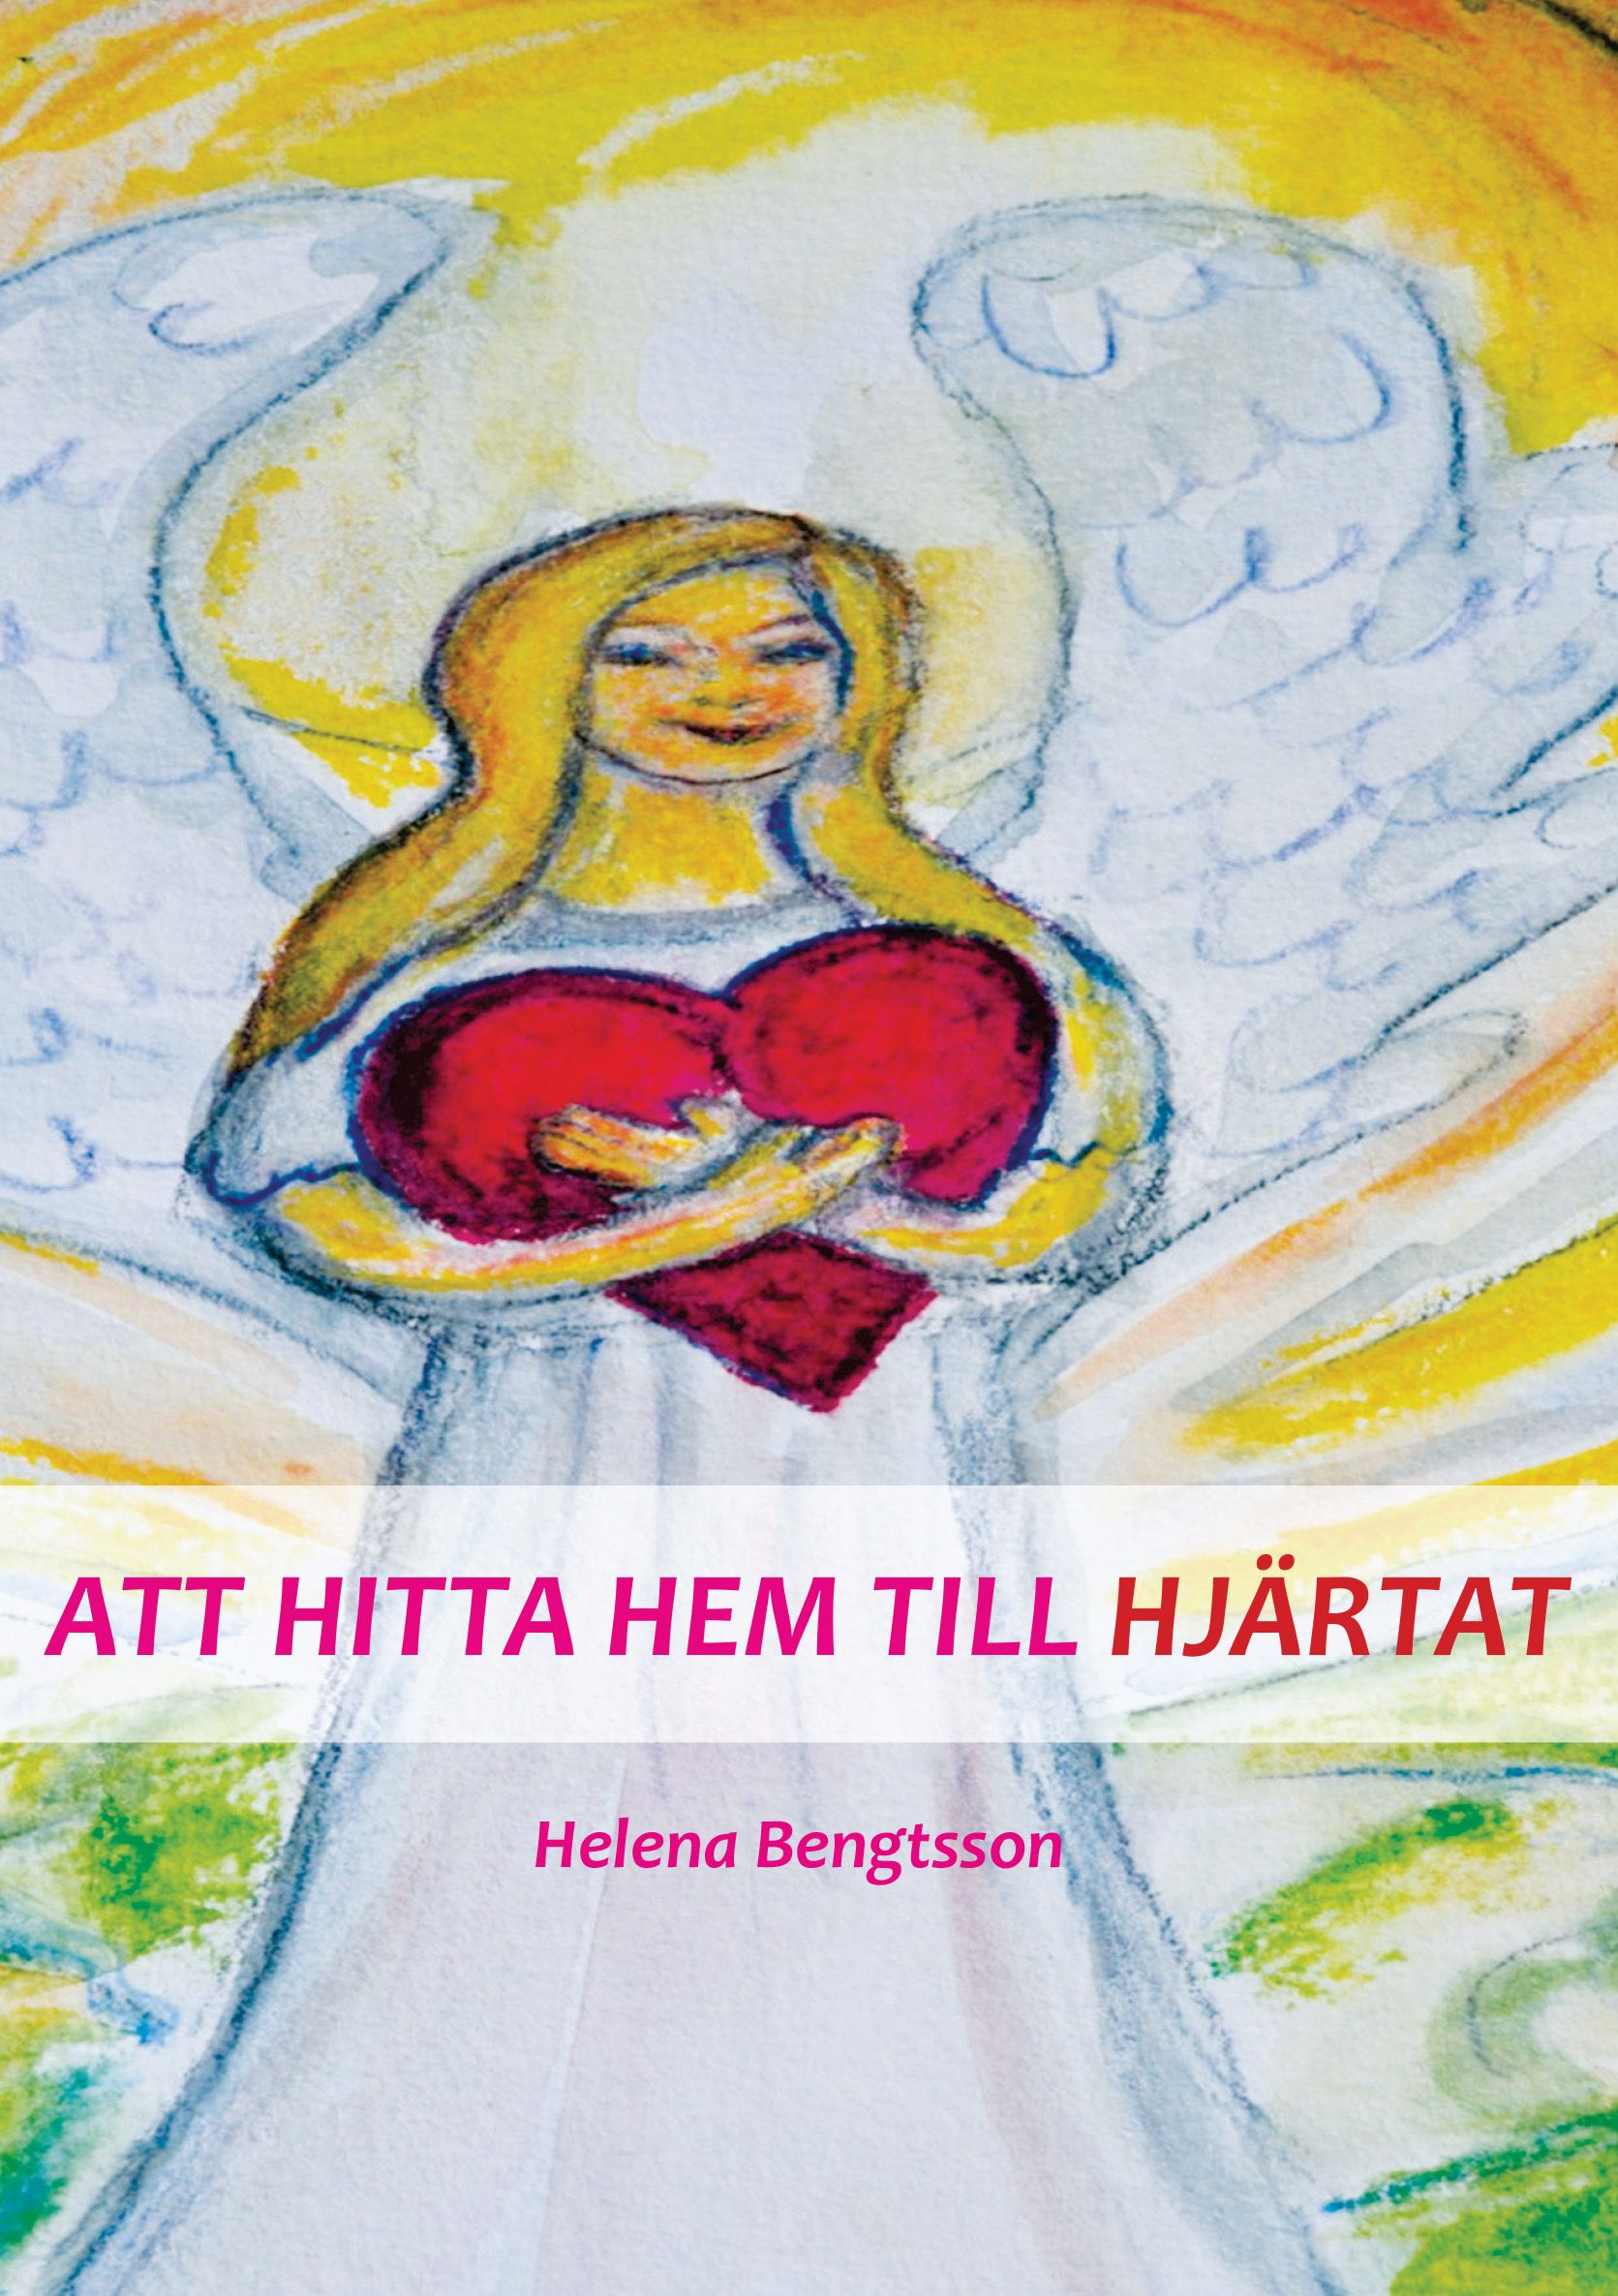 ATT HITTA HEM TILL HJÄRTAT, e-bog af Helena Bengtsson